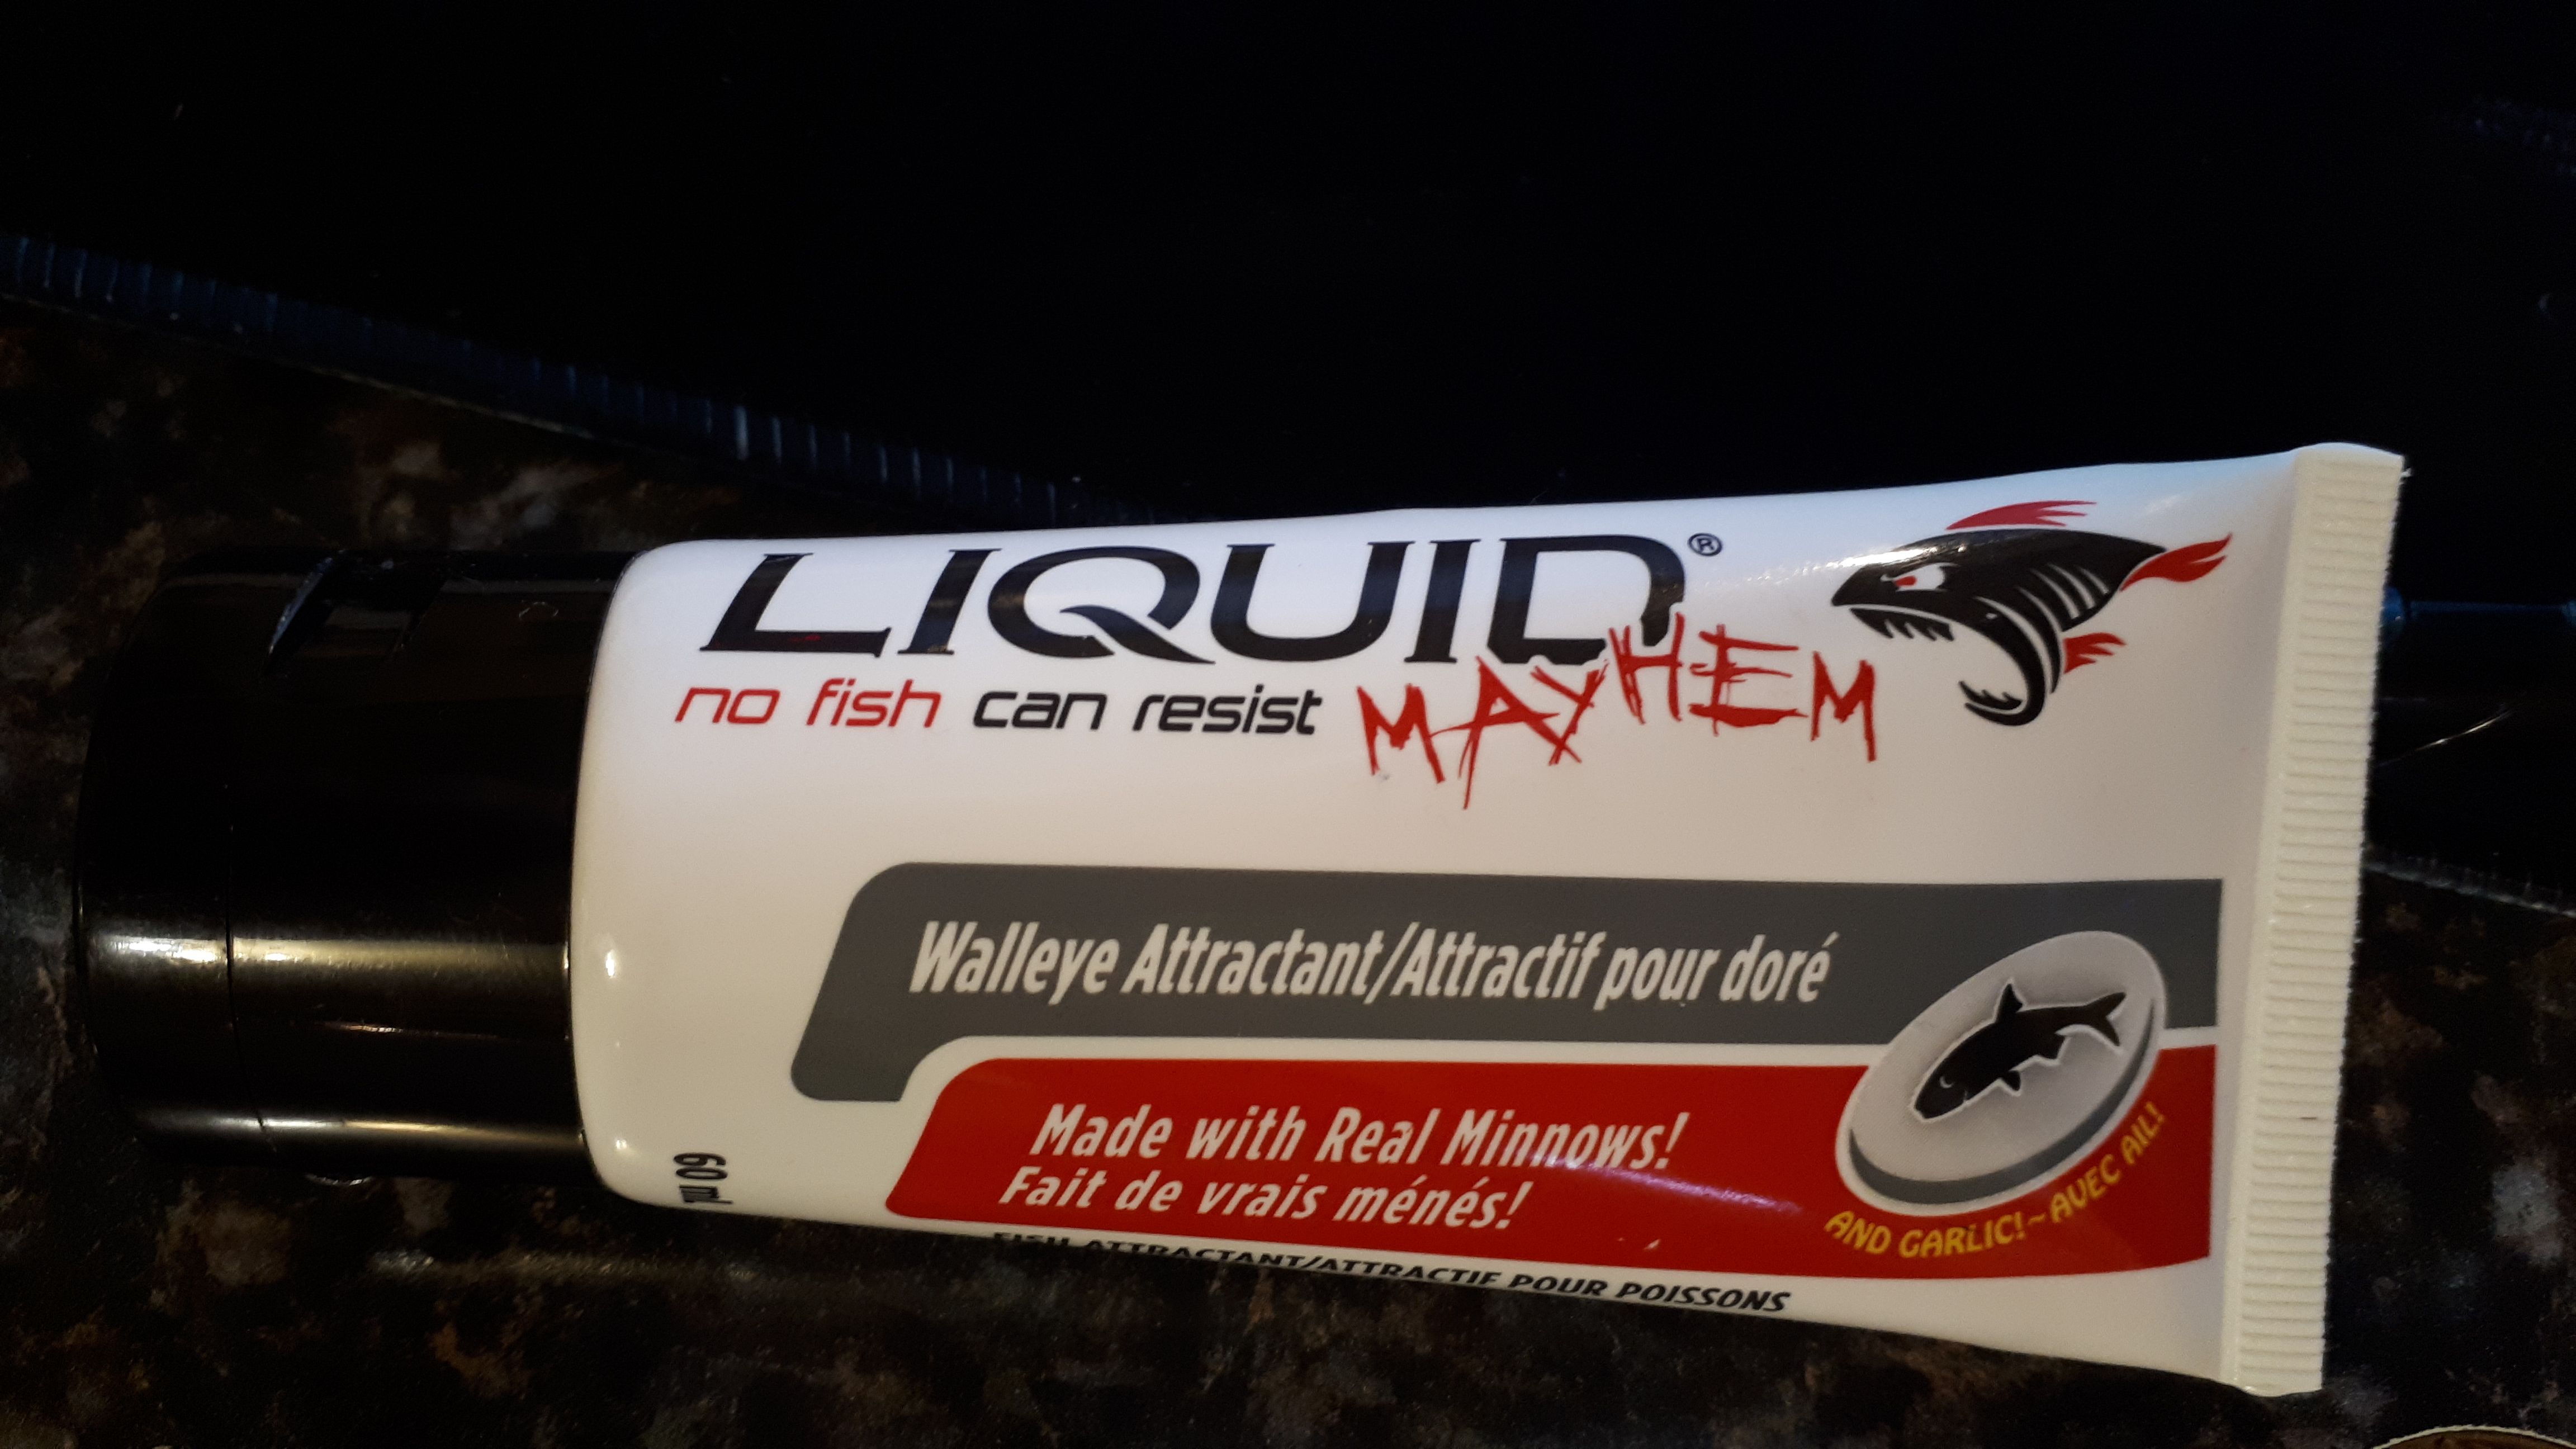 Attractant Liquid Mayhem Garlic Minnow (Vairon et ail) - RDB Fishing